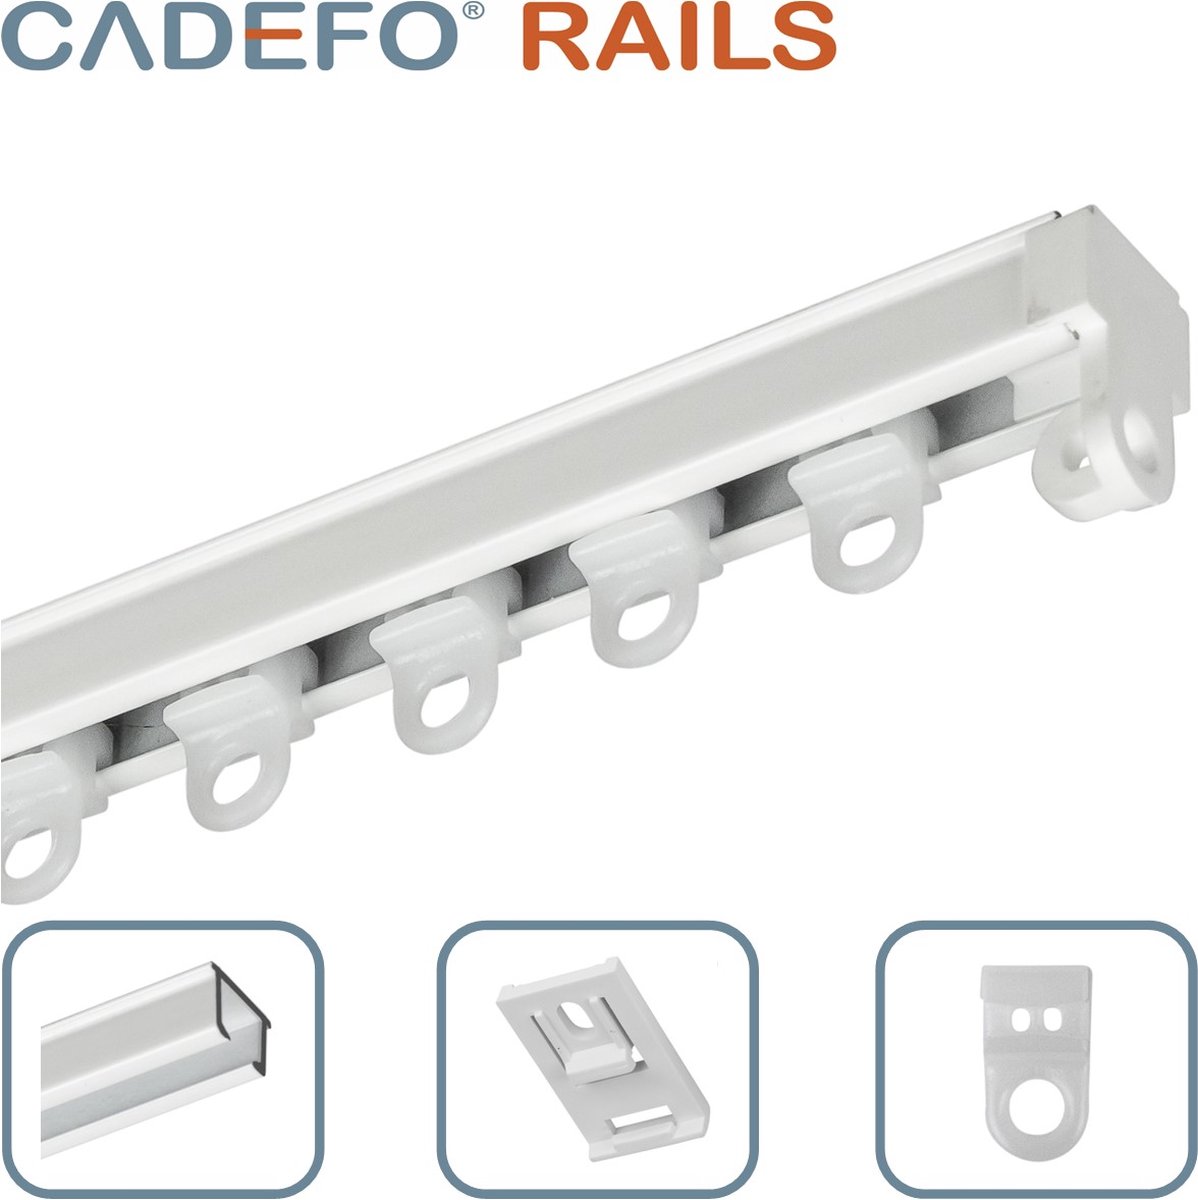 CADEFO RAILS (251 - 300 cm) Gordijnrails - Compleet op maat! - UIT 1 STUK - Leverbaar tot 6 meter - Plafondbevestiging - Lengte 275 cm